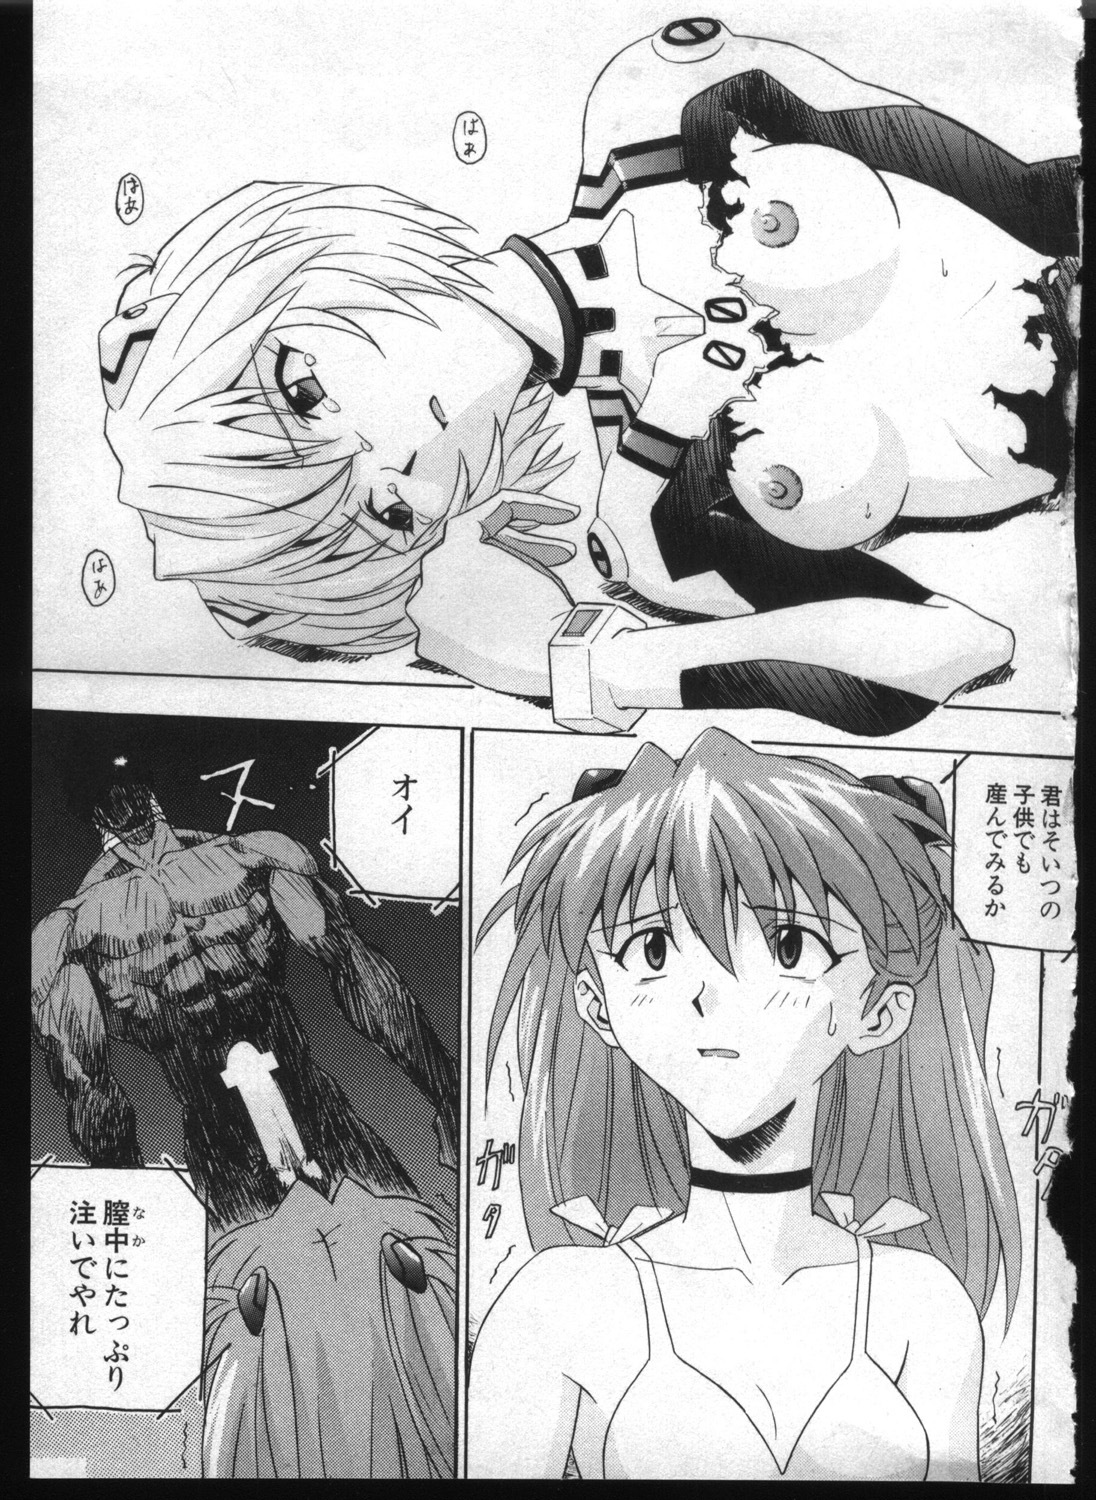 [Anthology] Shitsurakuen 7 | Paradise Lost 7 (Neon Genesis Evangelion) page 15 full